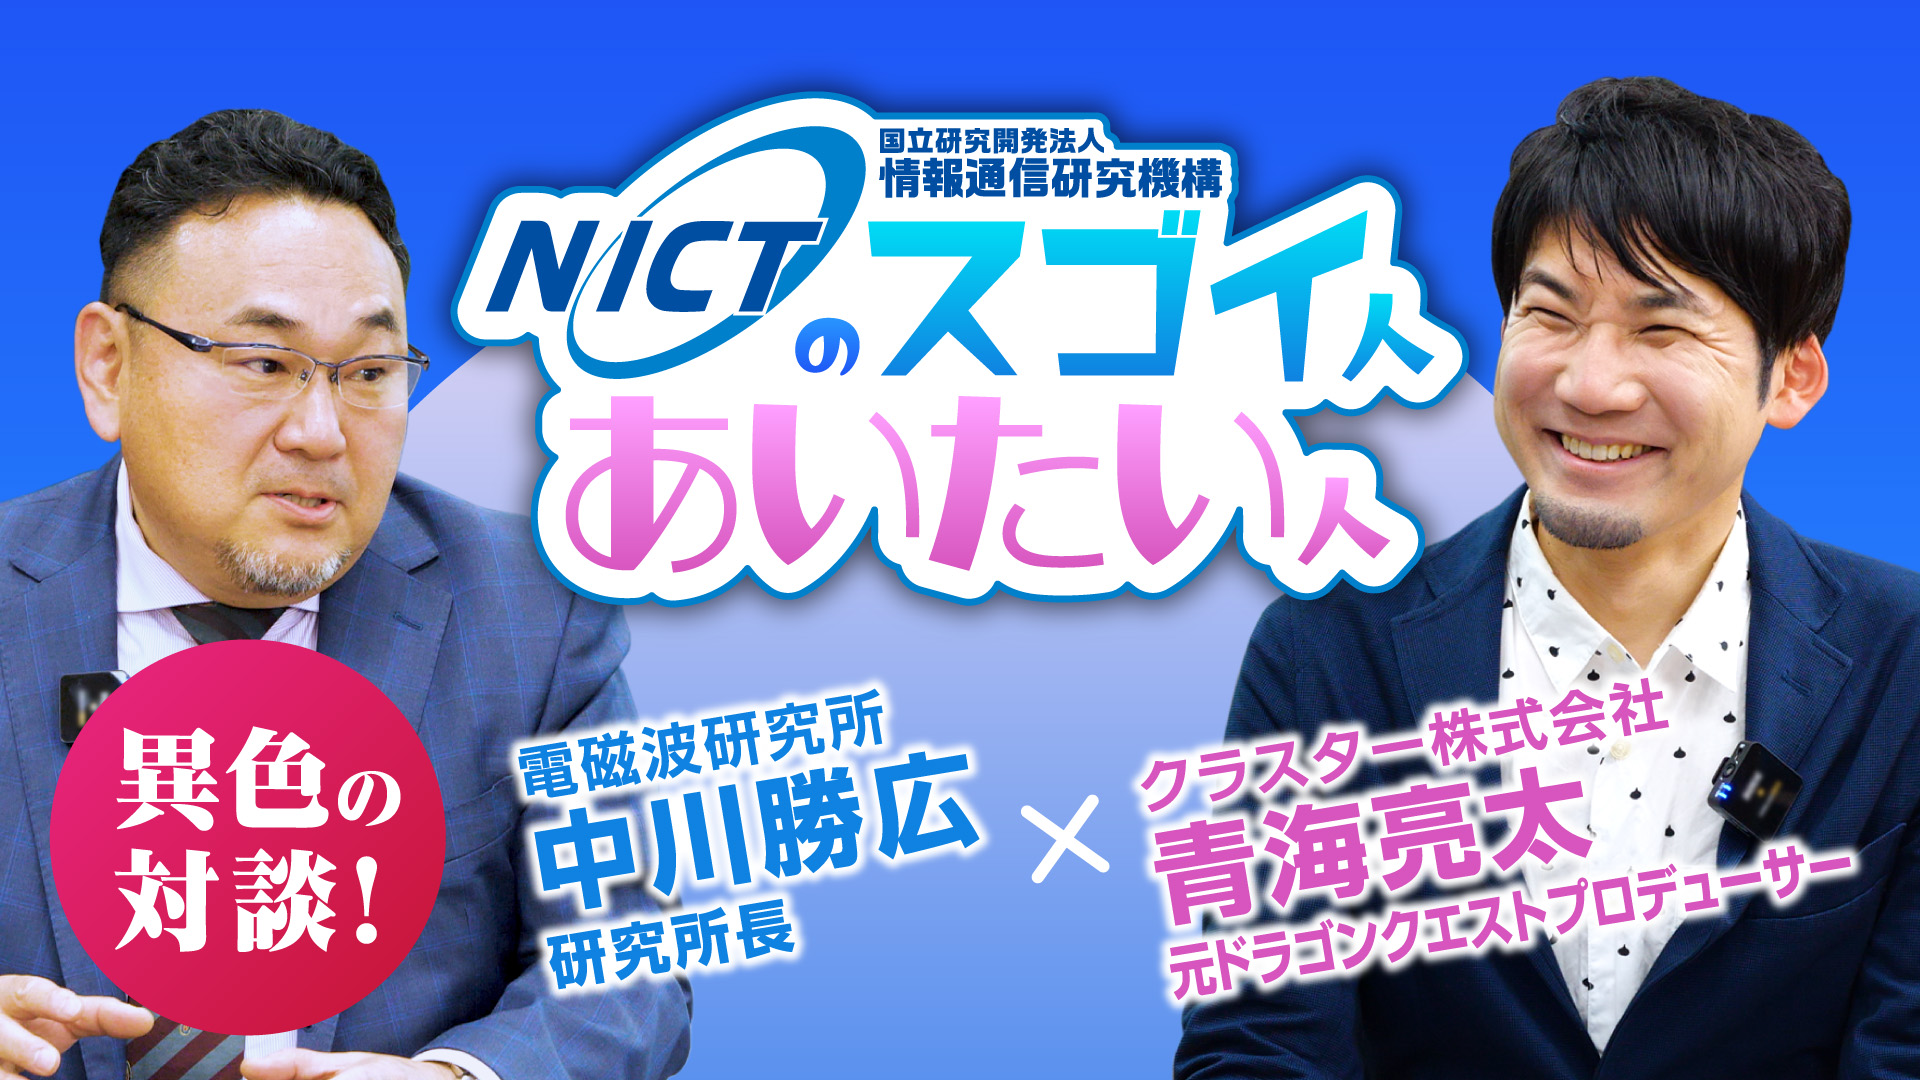 NICT × クラスター株式会社 スペシャルトーク企画『Z世代に向けたメッセージ』